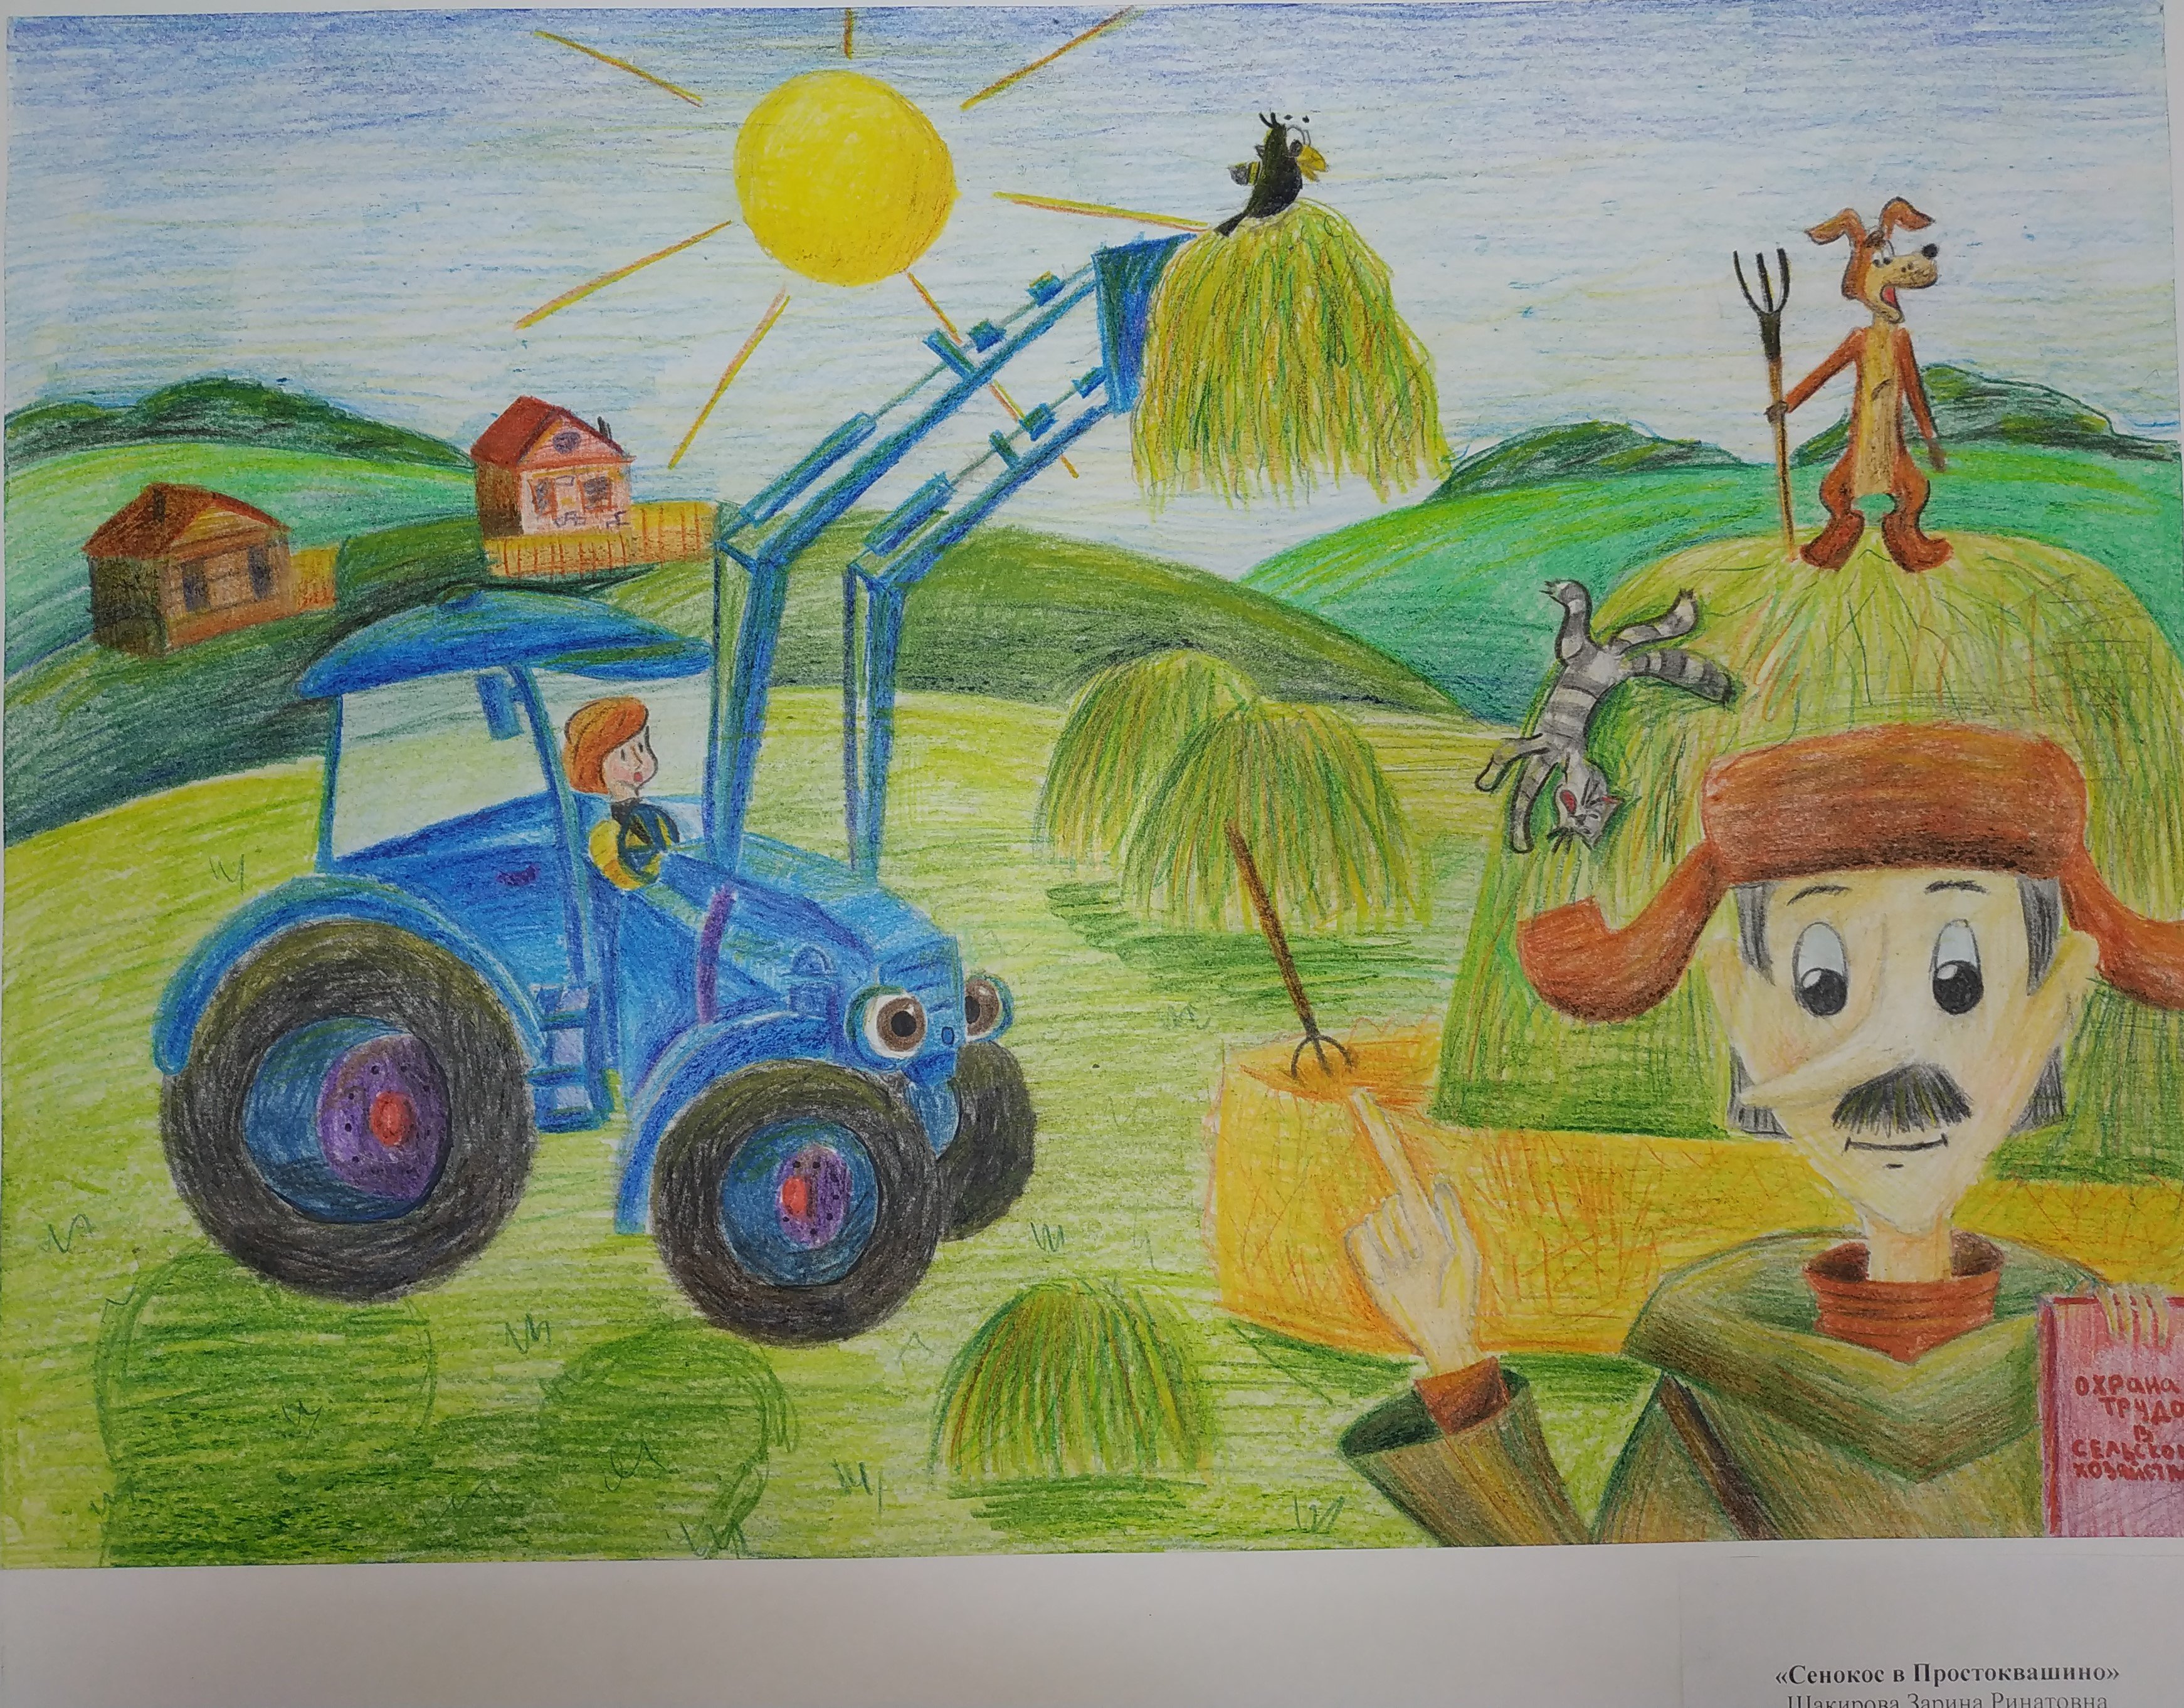 Сельское хозяйство глазами детей